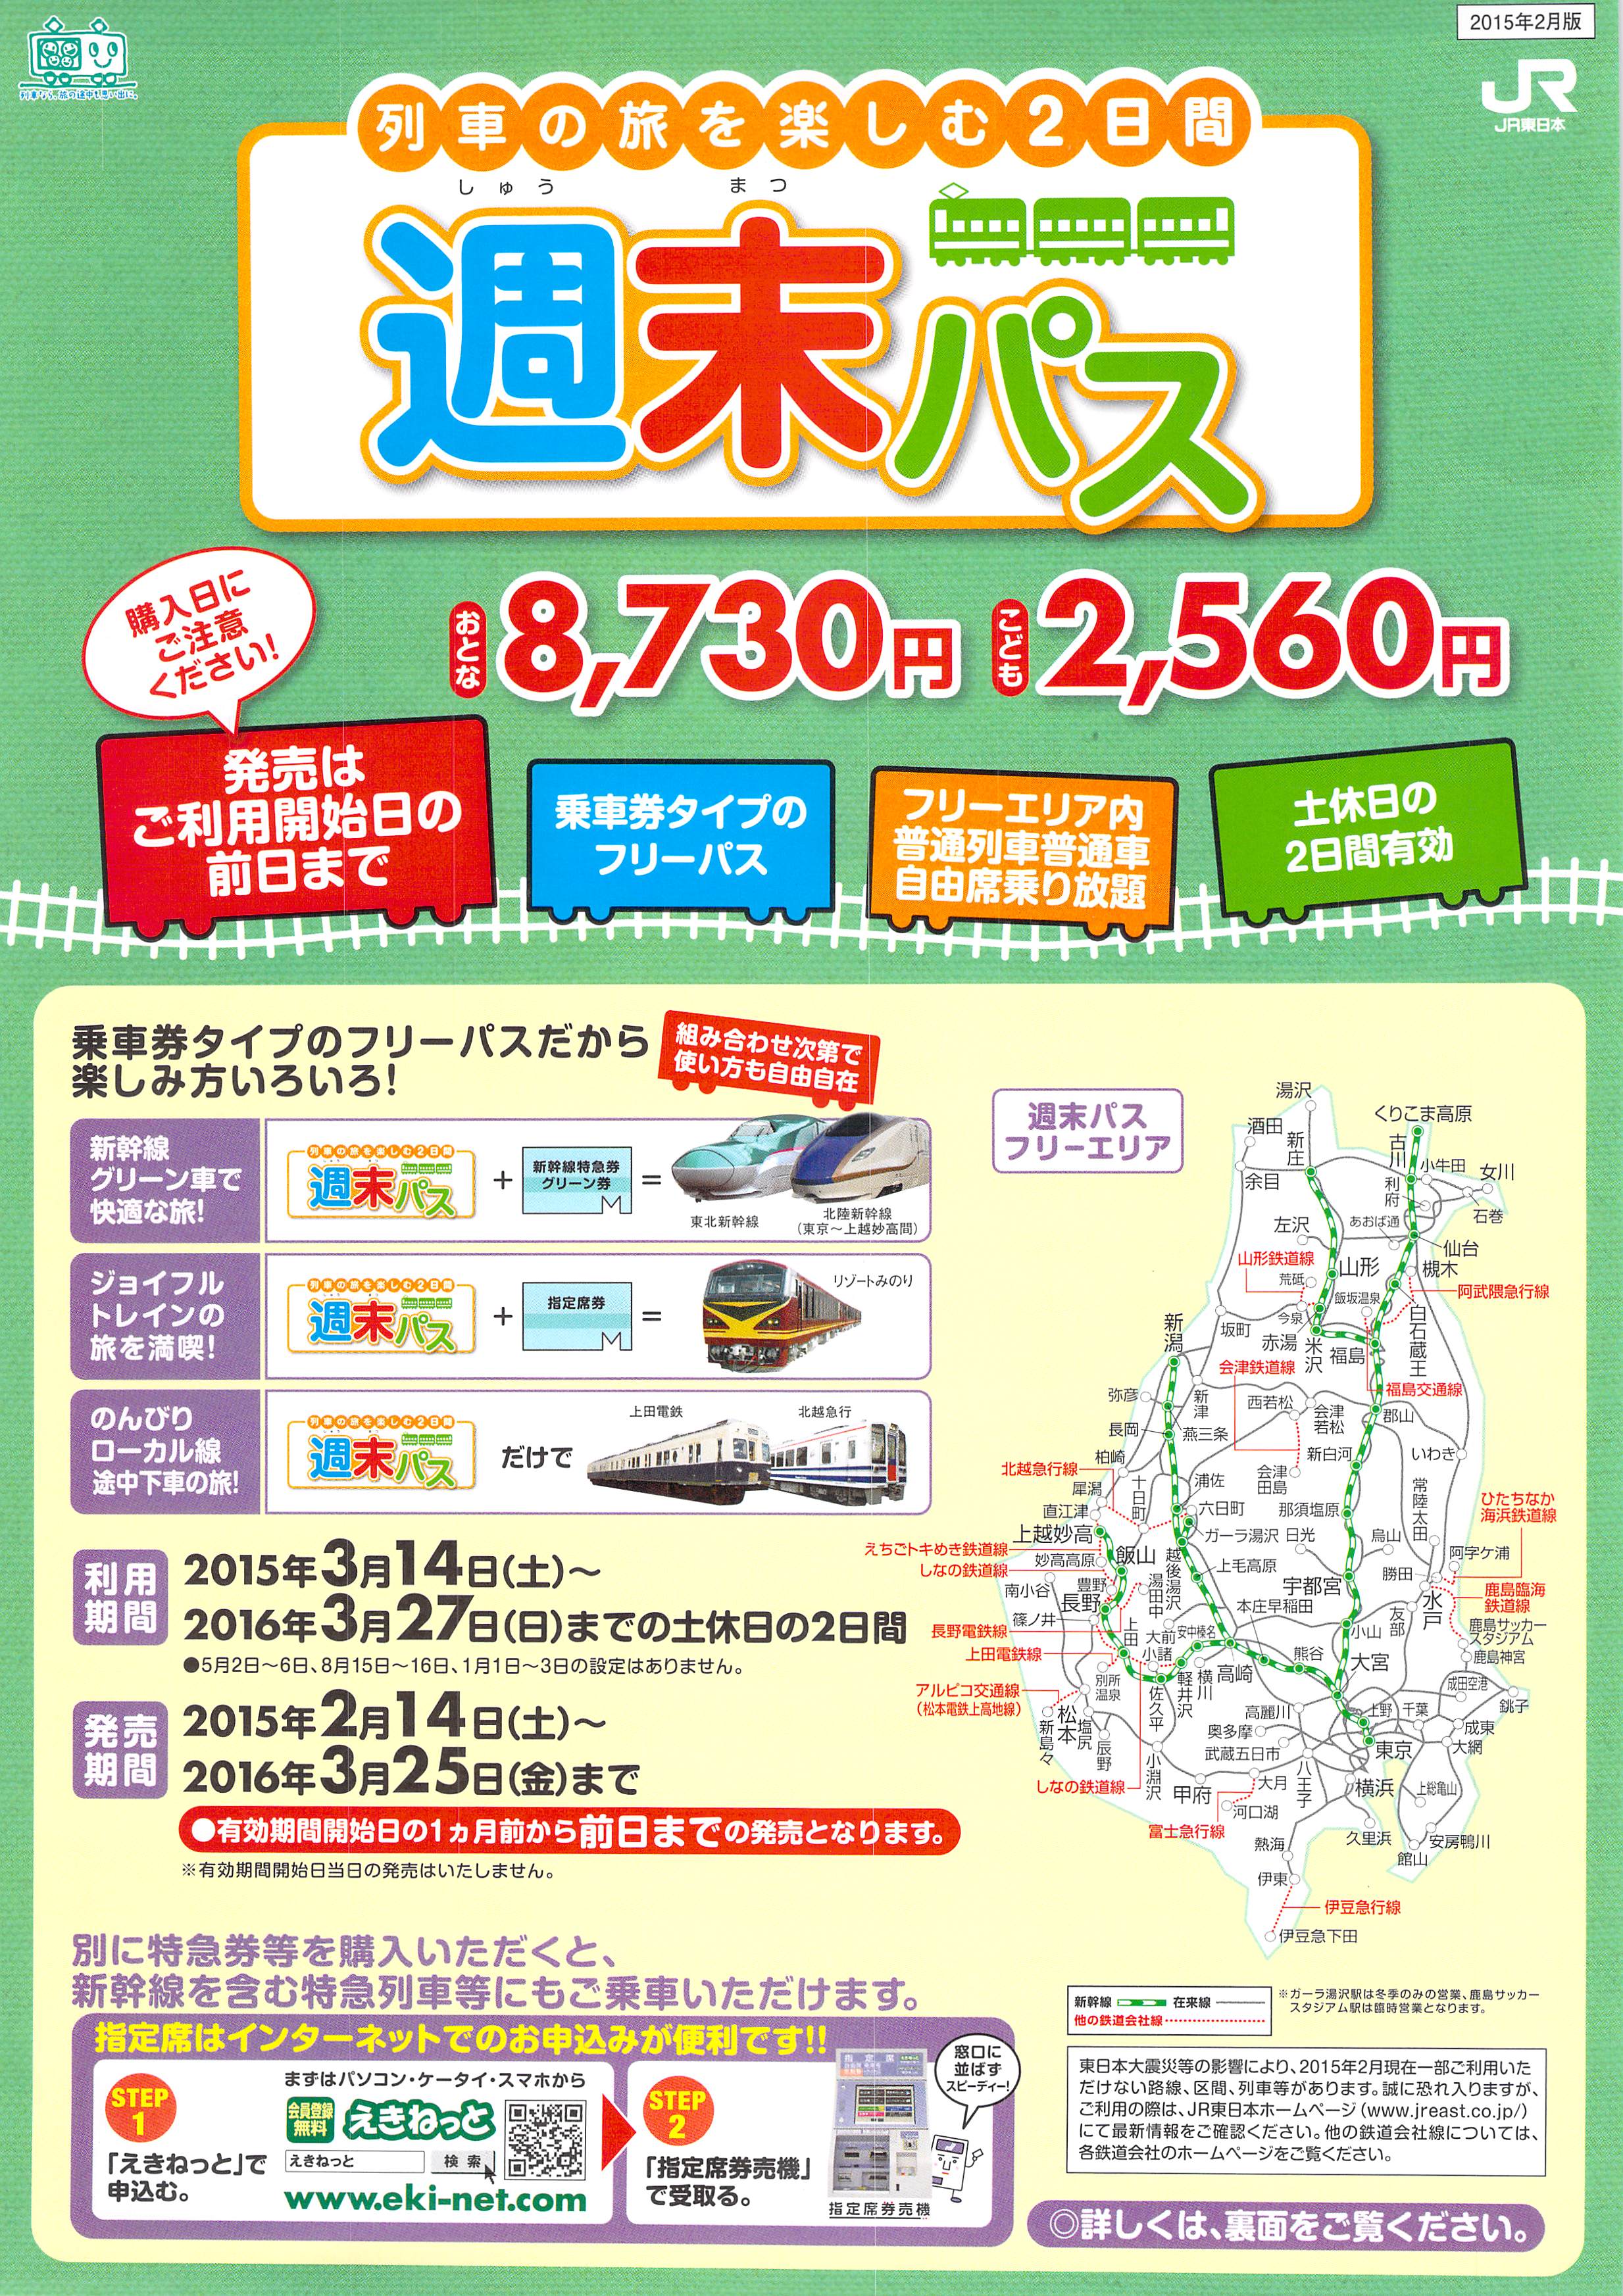 JR東日本「週末パス」を使って旅をする3つの理由